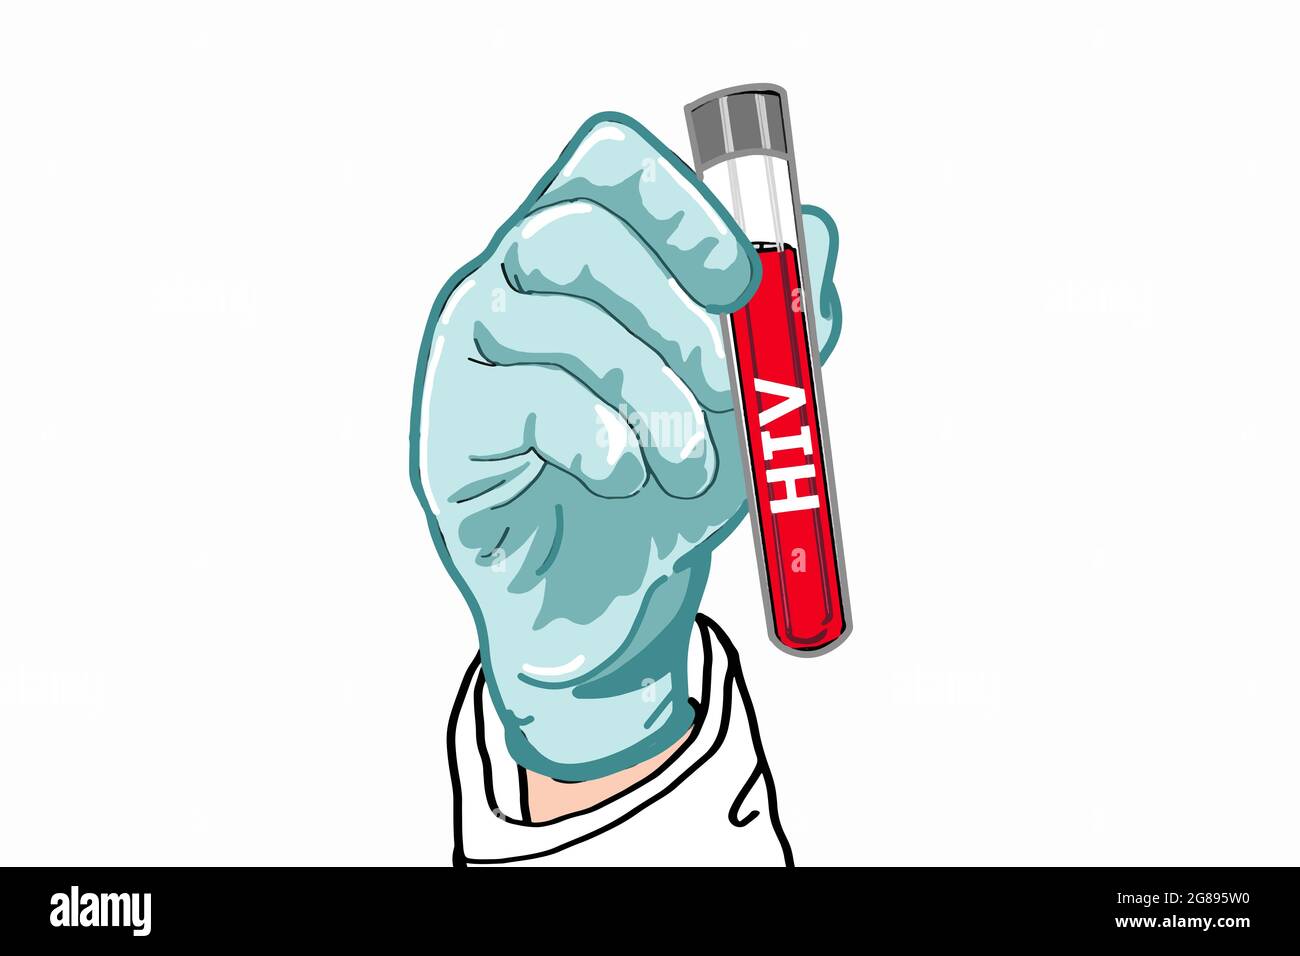 Siencest, Arzt, gesunde Arbeiter Hand geben medizinische Handschuhe und hält Laborschlauch hiv positive Test Illustration Zeichnung. Stockfoto